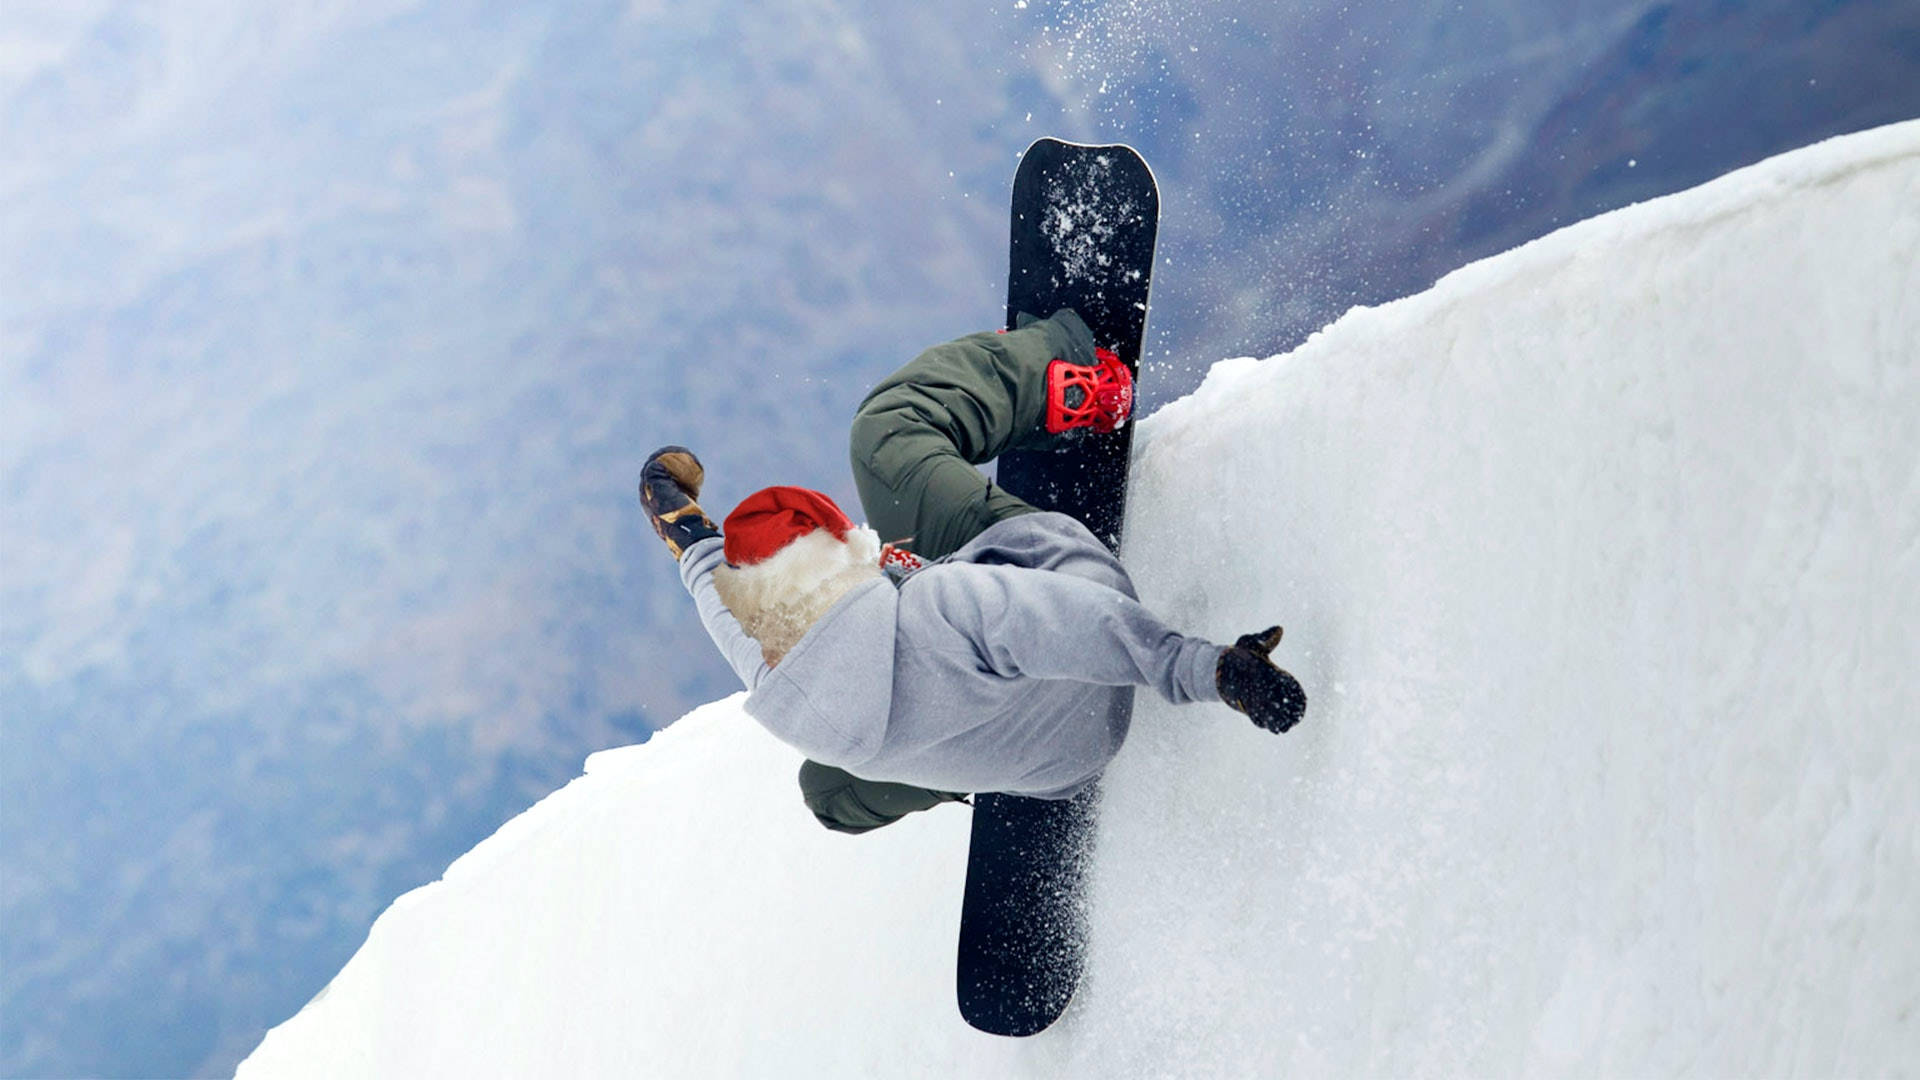 Påedge Snowboarding. Wallpaper